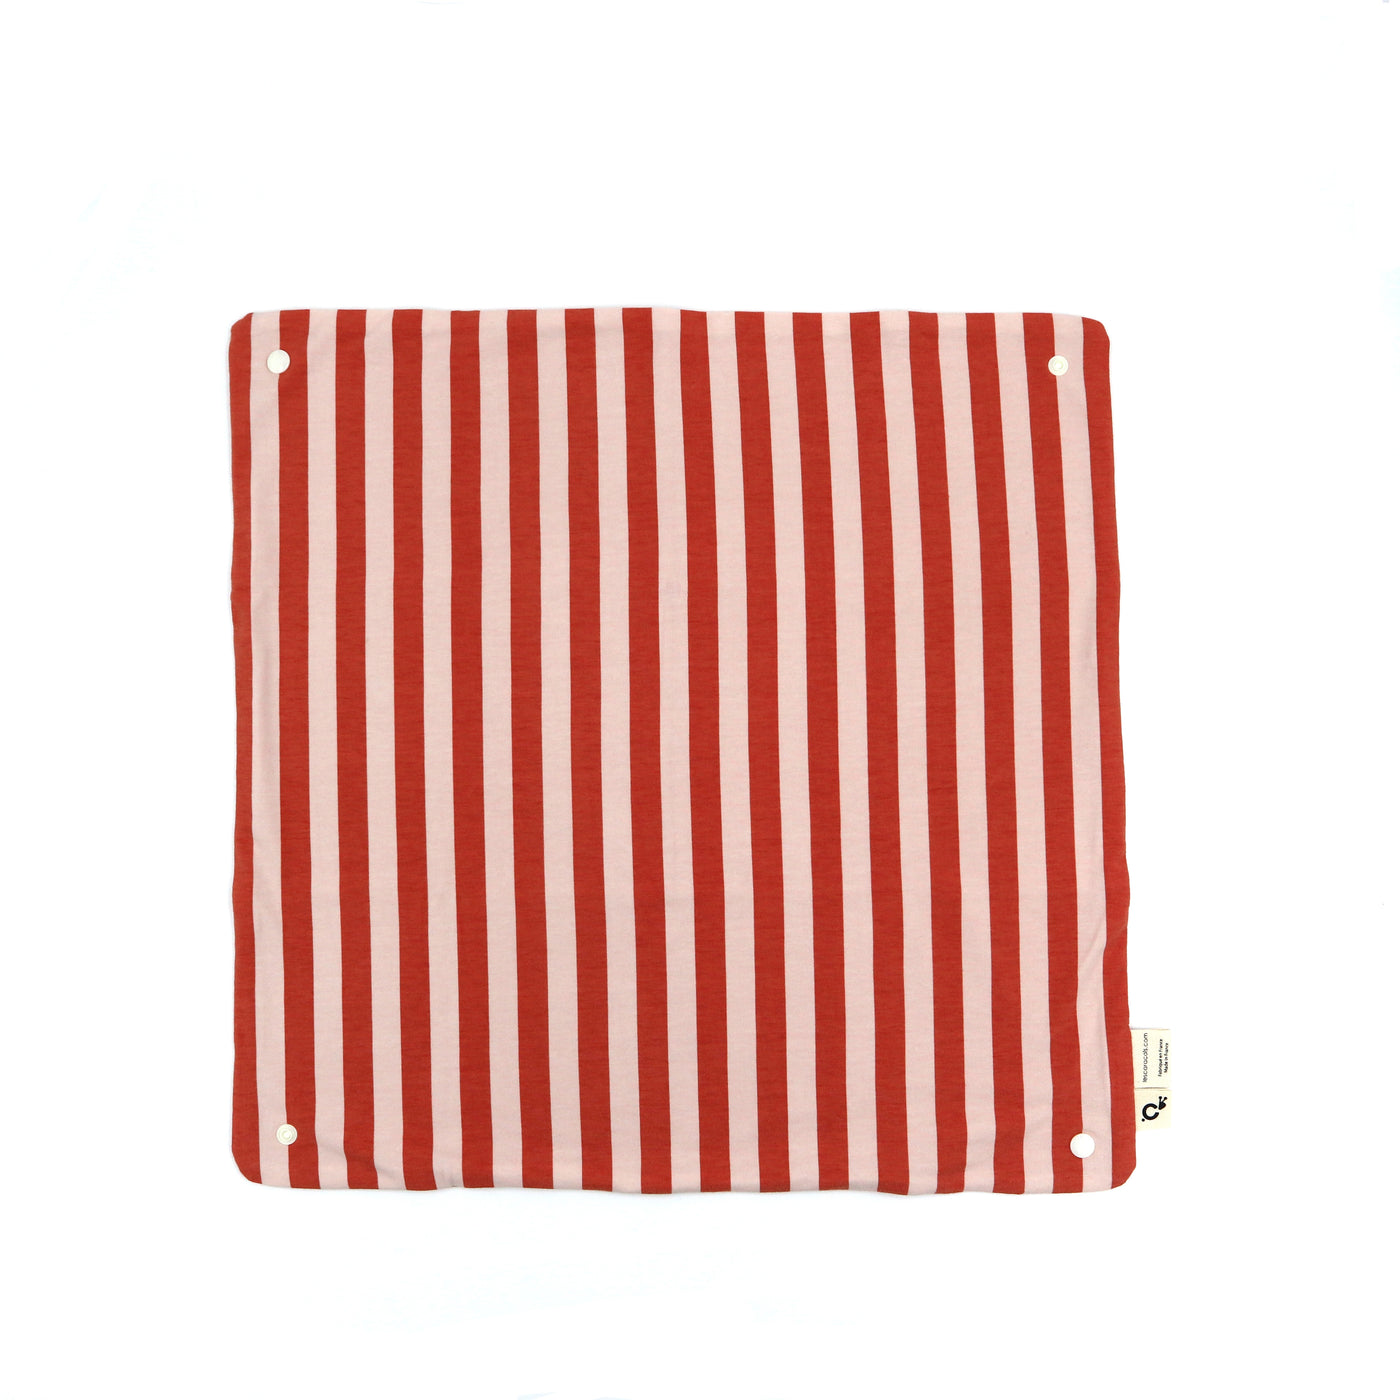 serviette de table pink stripes